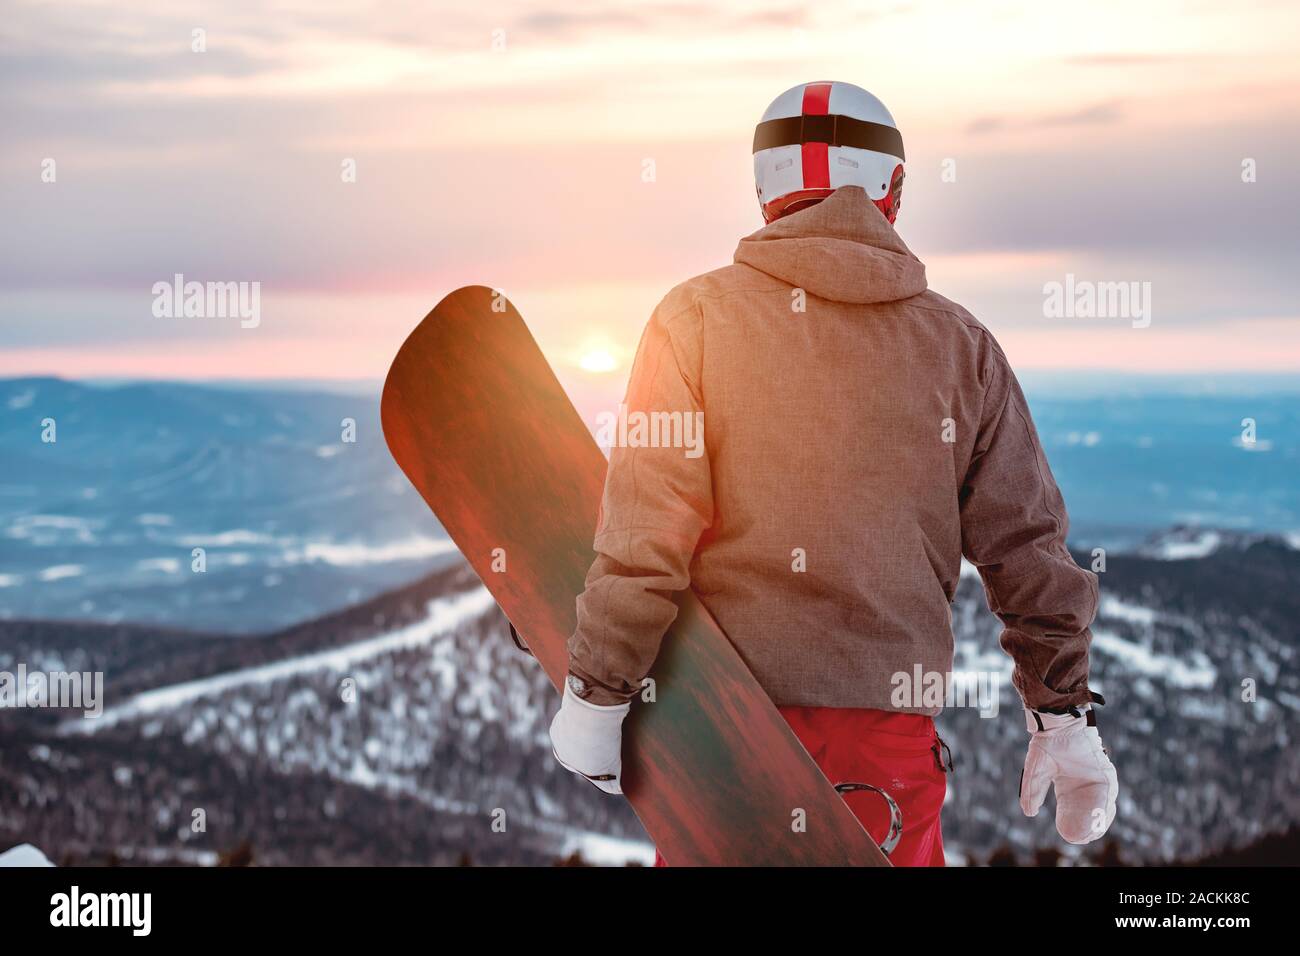 Snowboarder steht mit Snowboard in die Hände gegen Sonnenuntergang und Berge Stockfoto